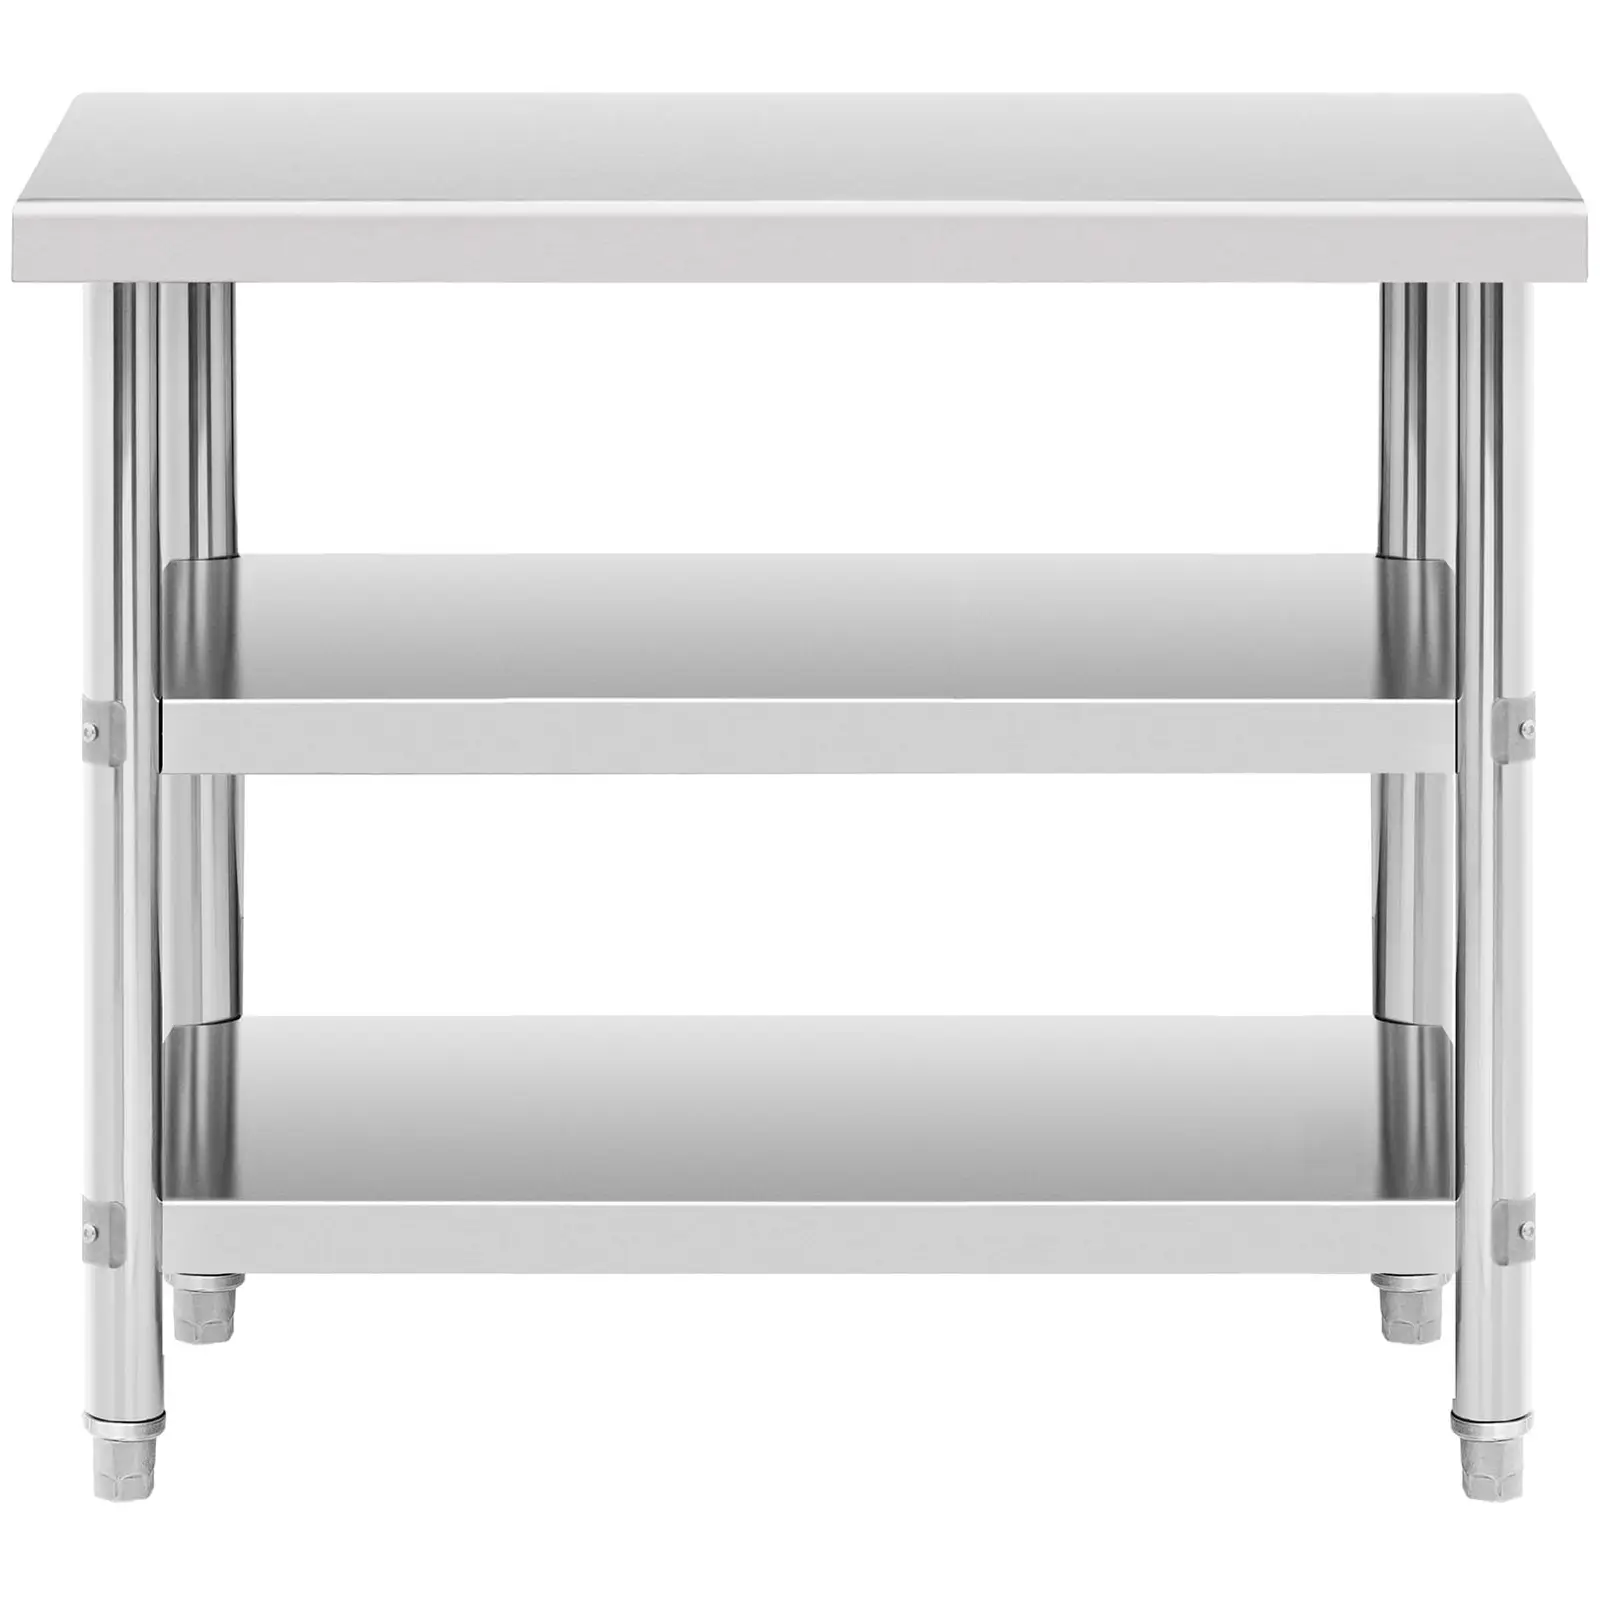 Pracovný stôl z nehrdzavejúcej ocele - 100 x 60 x 5 cm - 185 kg - 2 police 